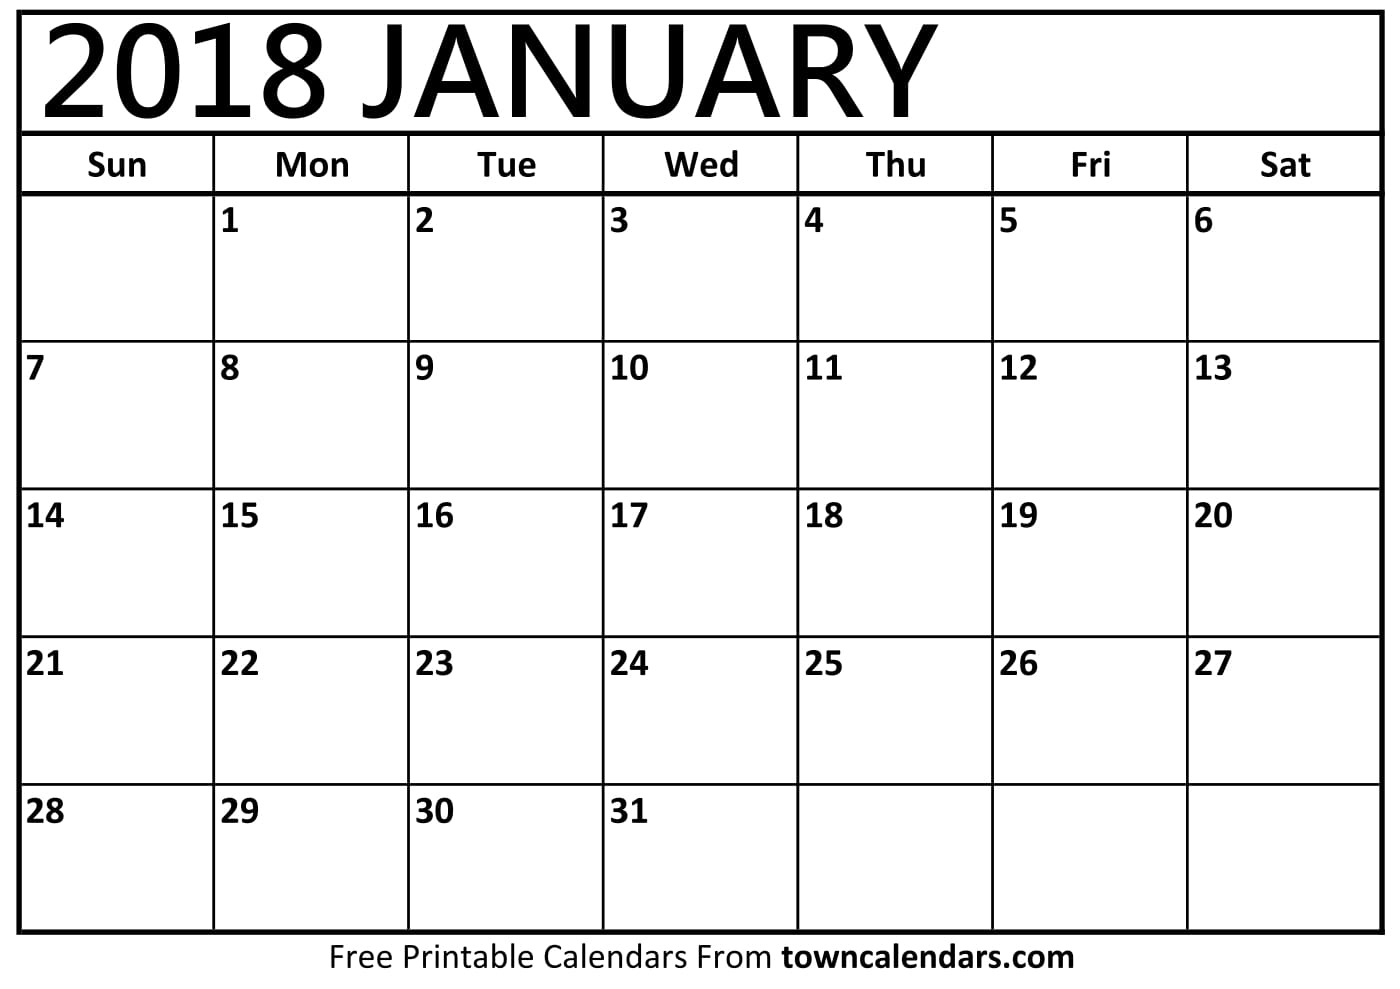 Printable January 2018 Calendar towncalendars com